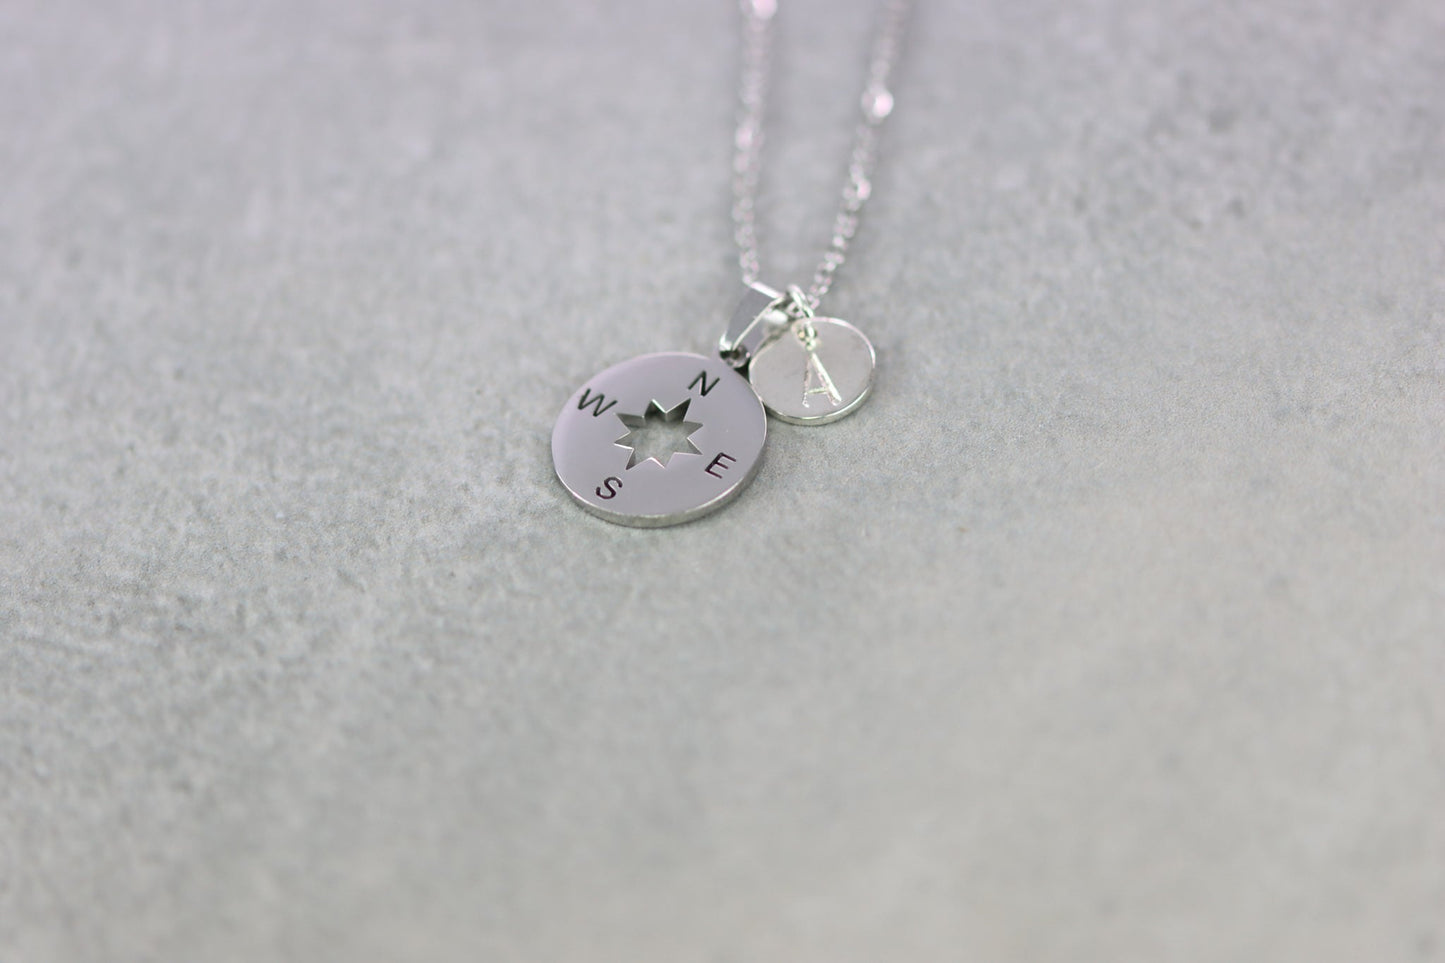 Wegweiser Kompass compass jewelry necklace Schmuck Halskette glänzend shiny personalisiert Blättchen Buchstabe personalized silber silver neverland Nimmerland rightway